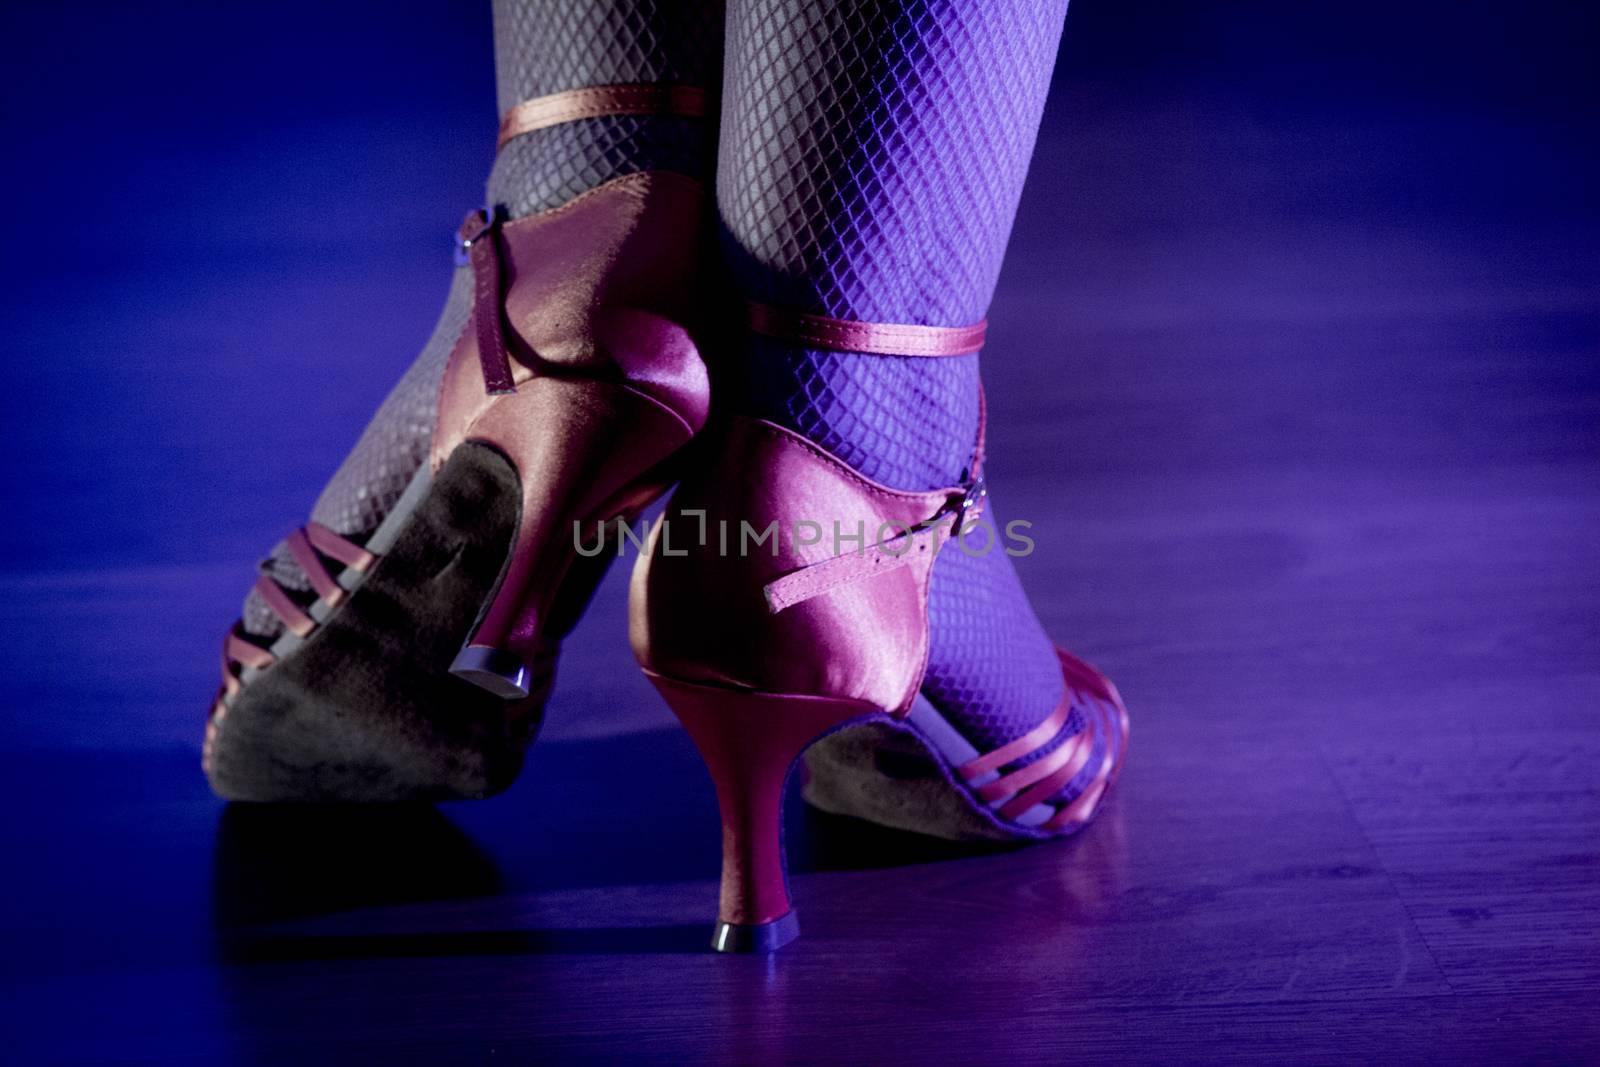 Feet woman dancing by gema_ibarra